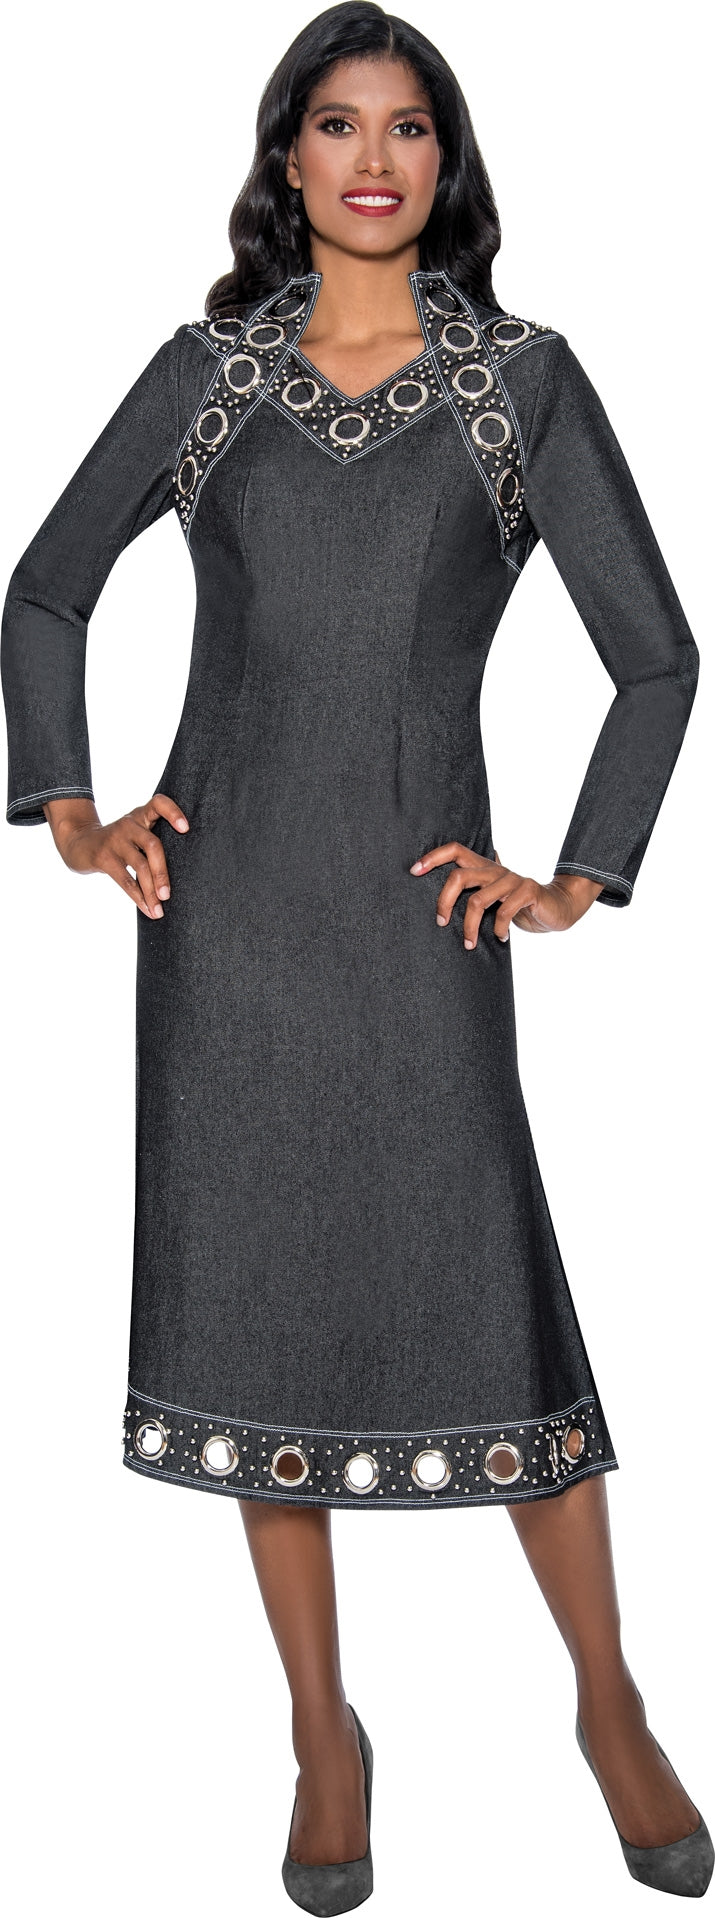 Devine Sport Denim Dress 63891 - Church Suits For Less